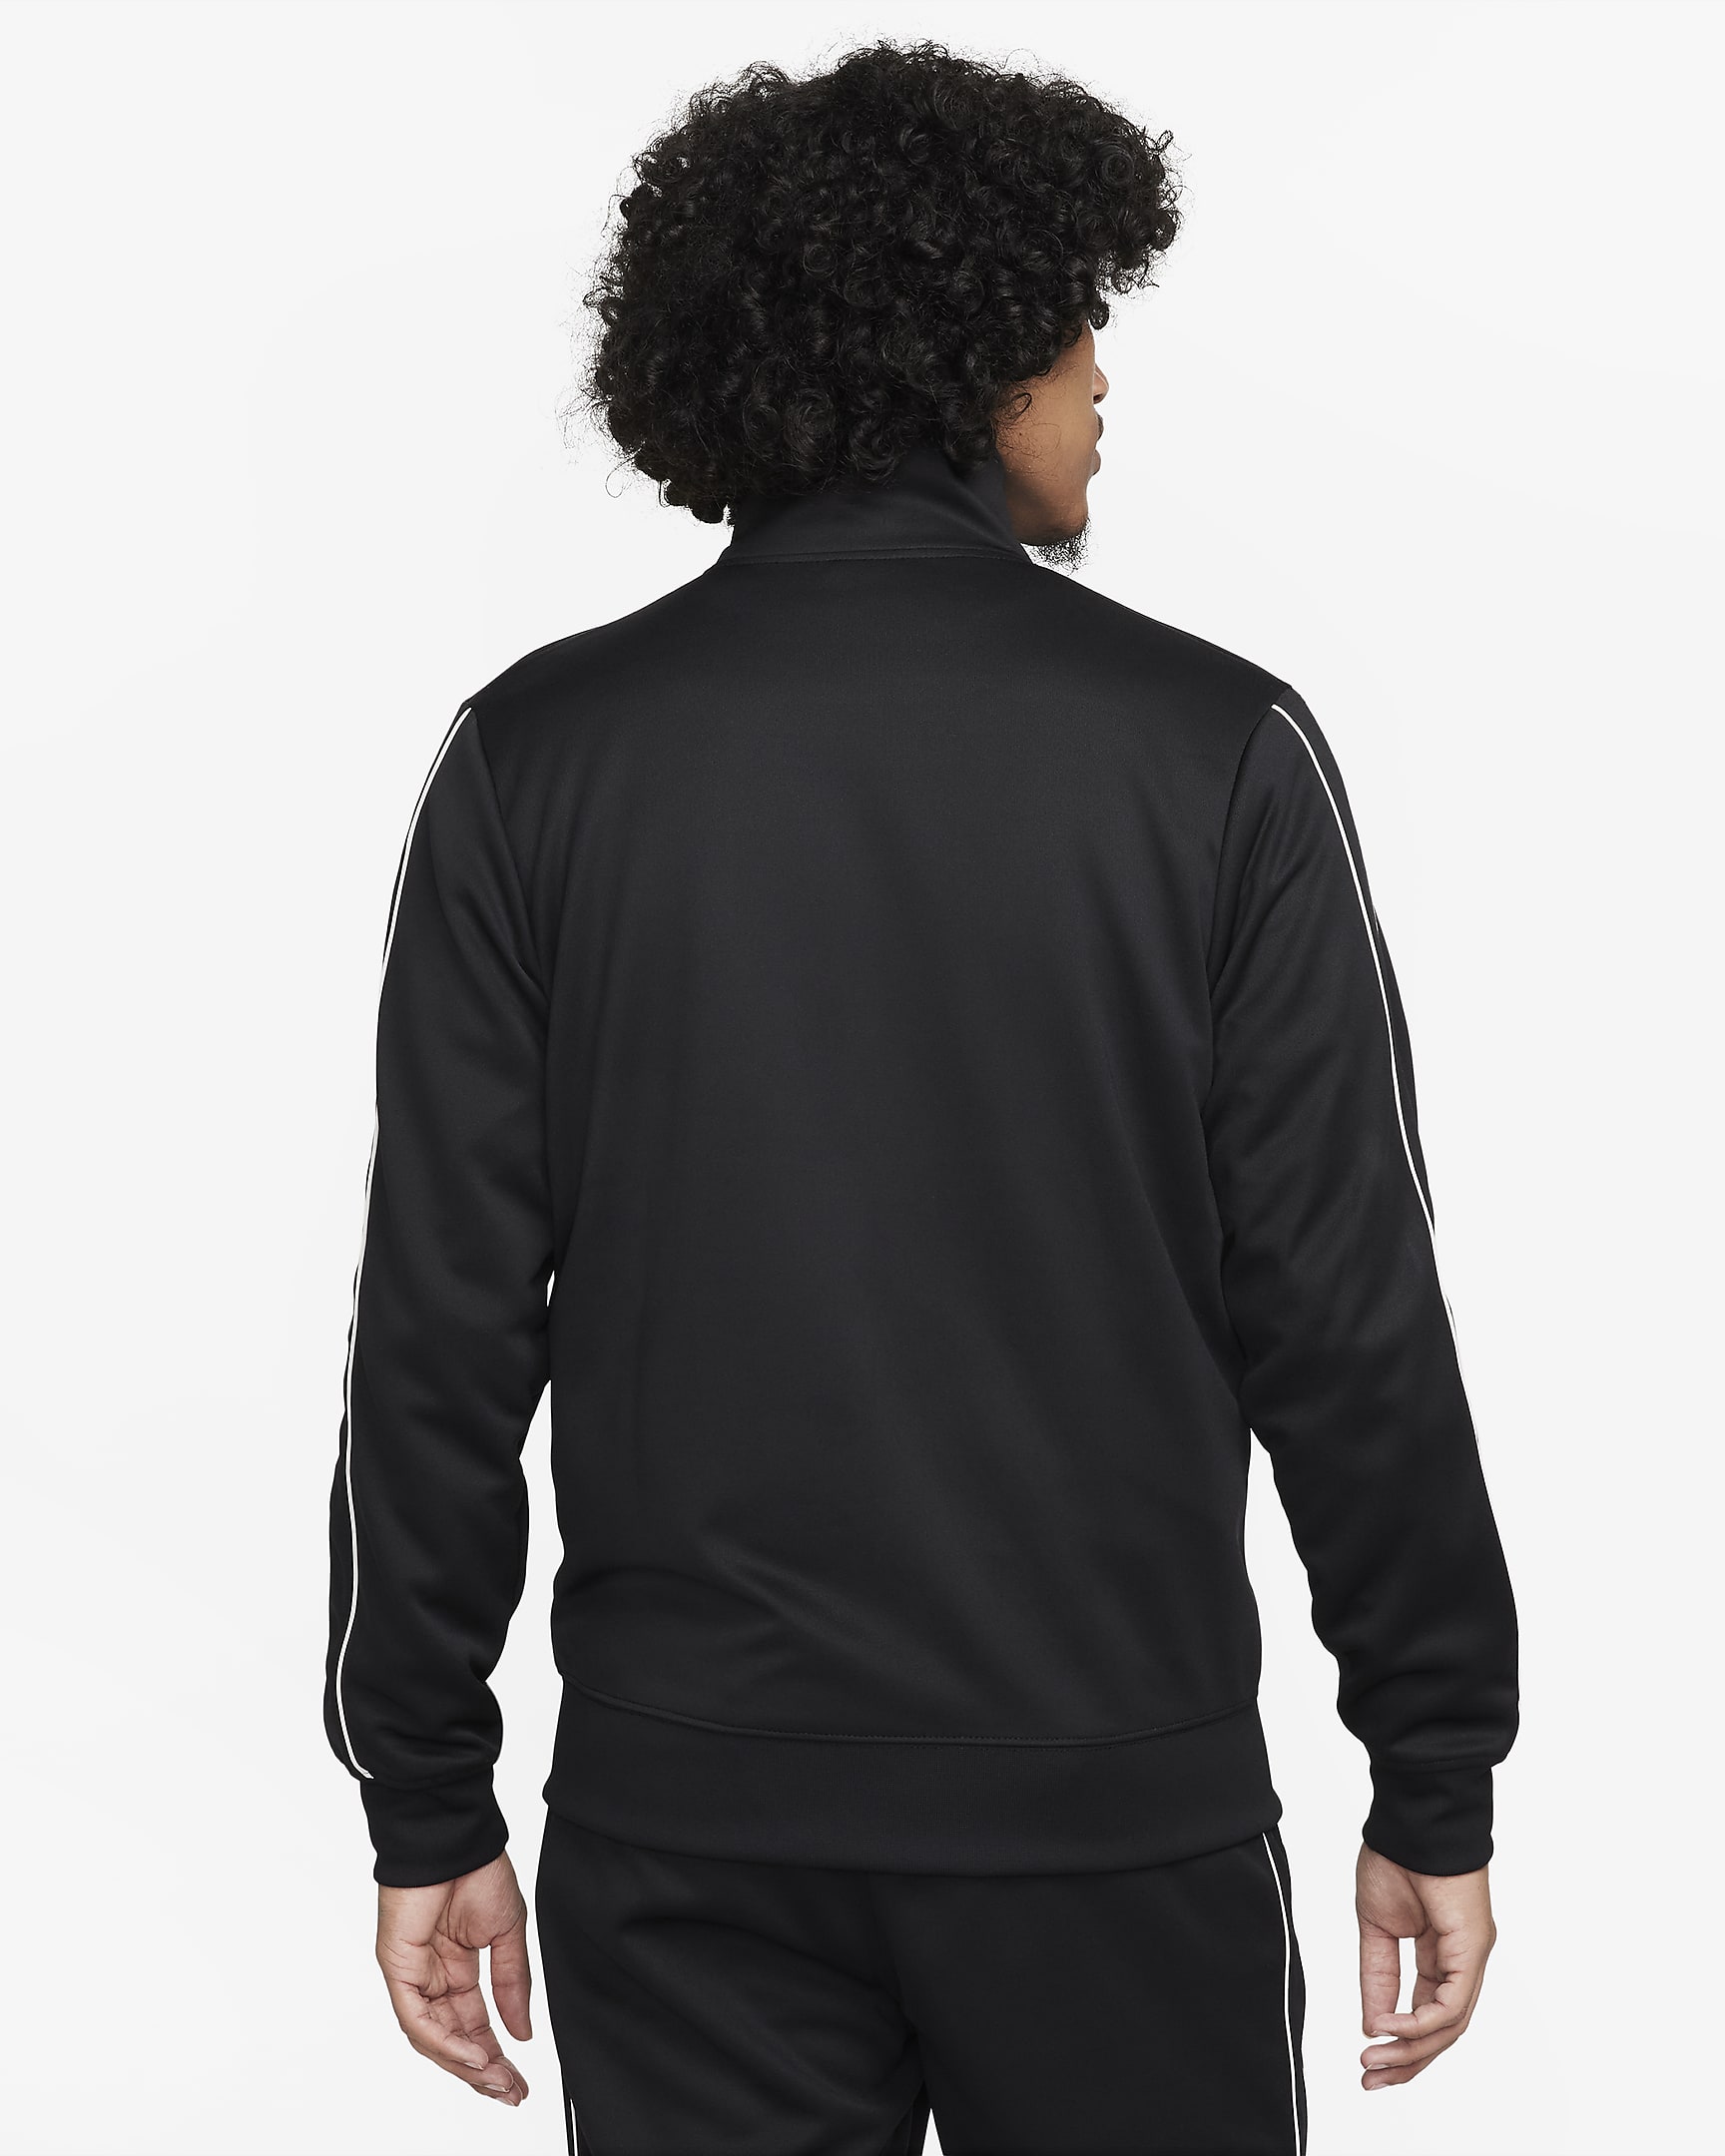 Nike Sportswear Men's Jacket. Nike AU